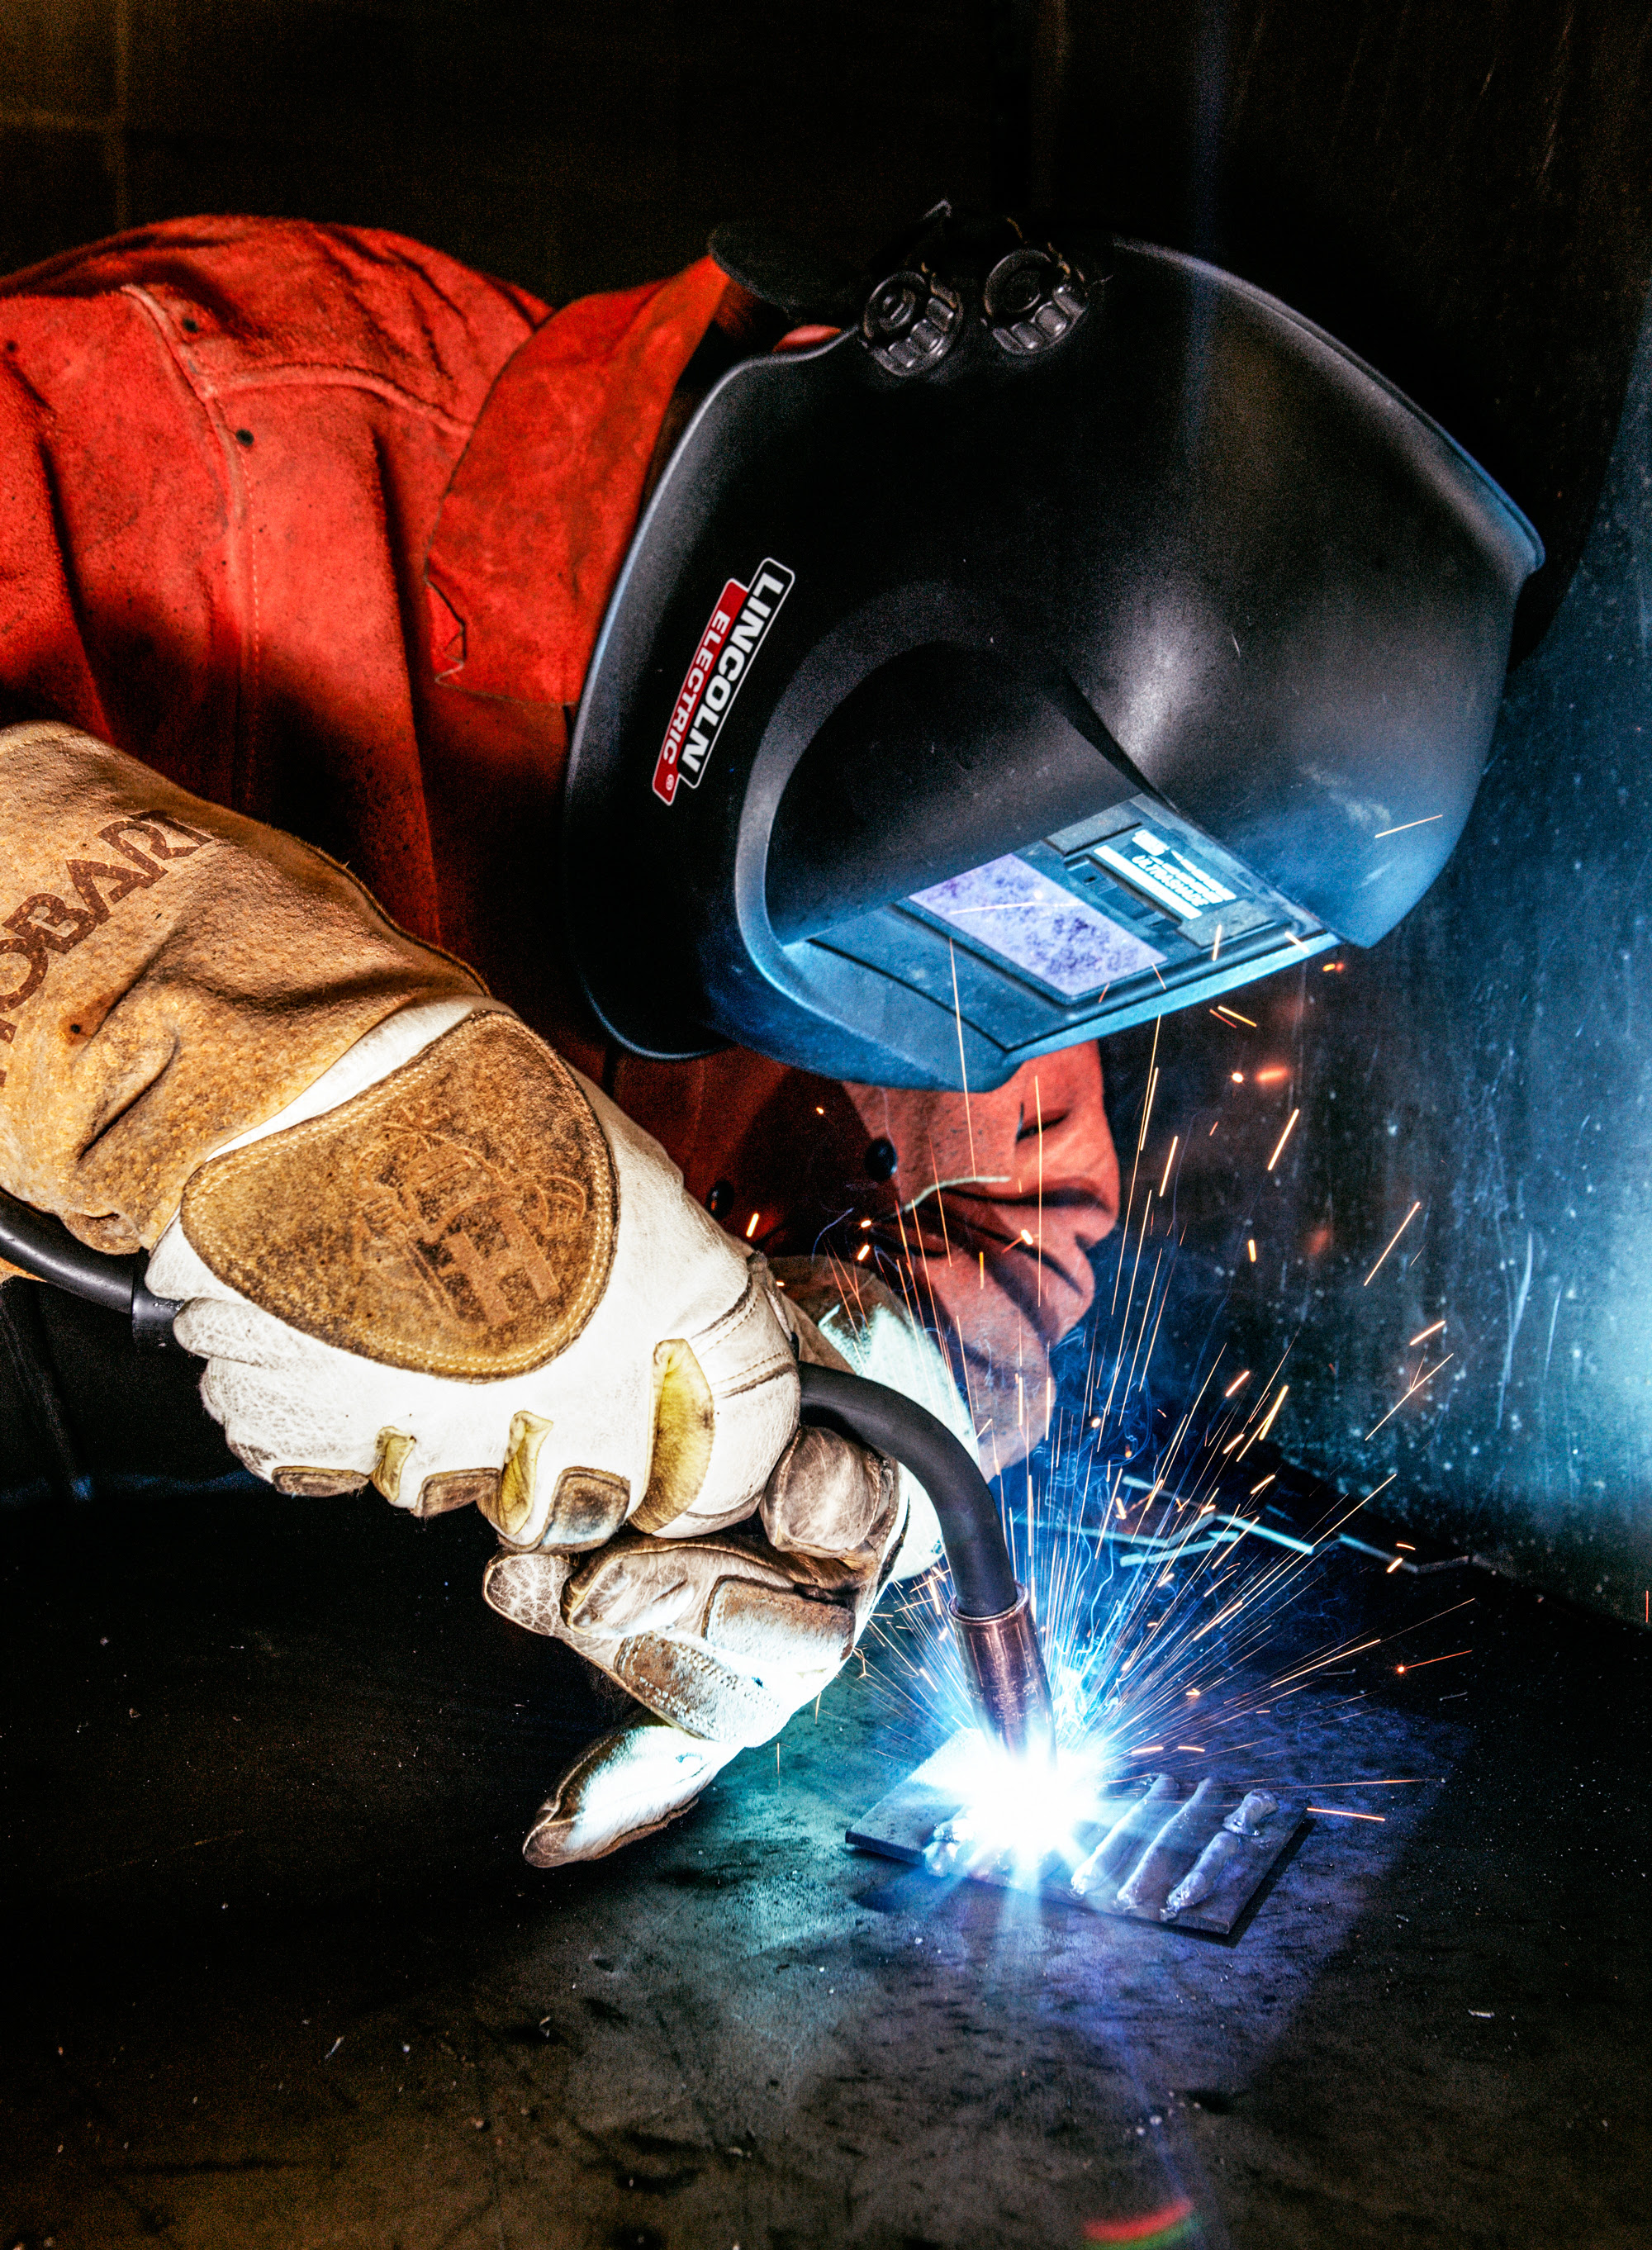 Welding - The DIY Guide welding is